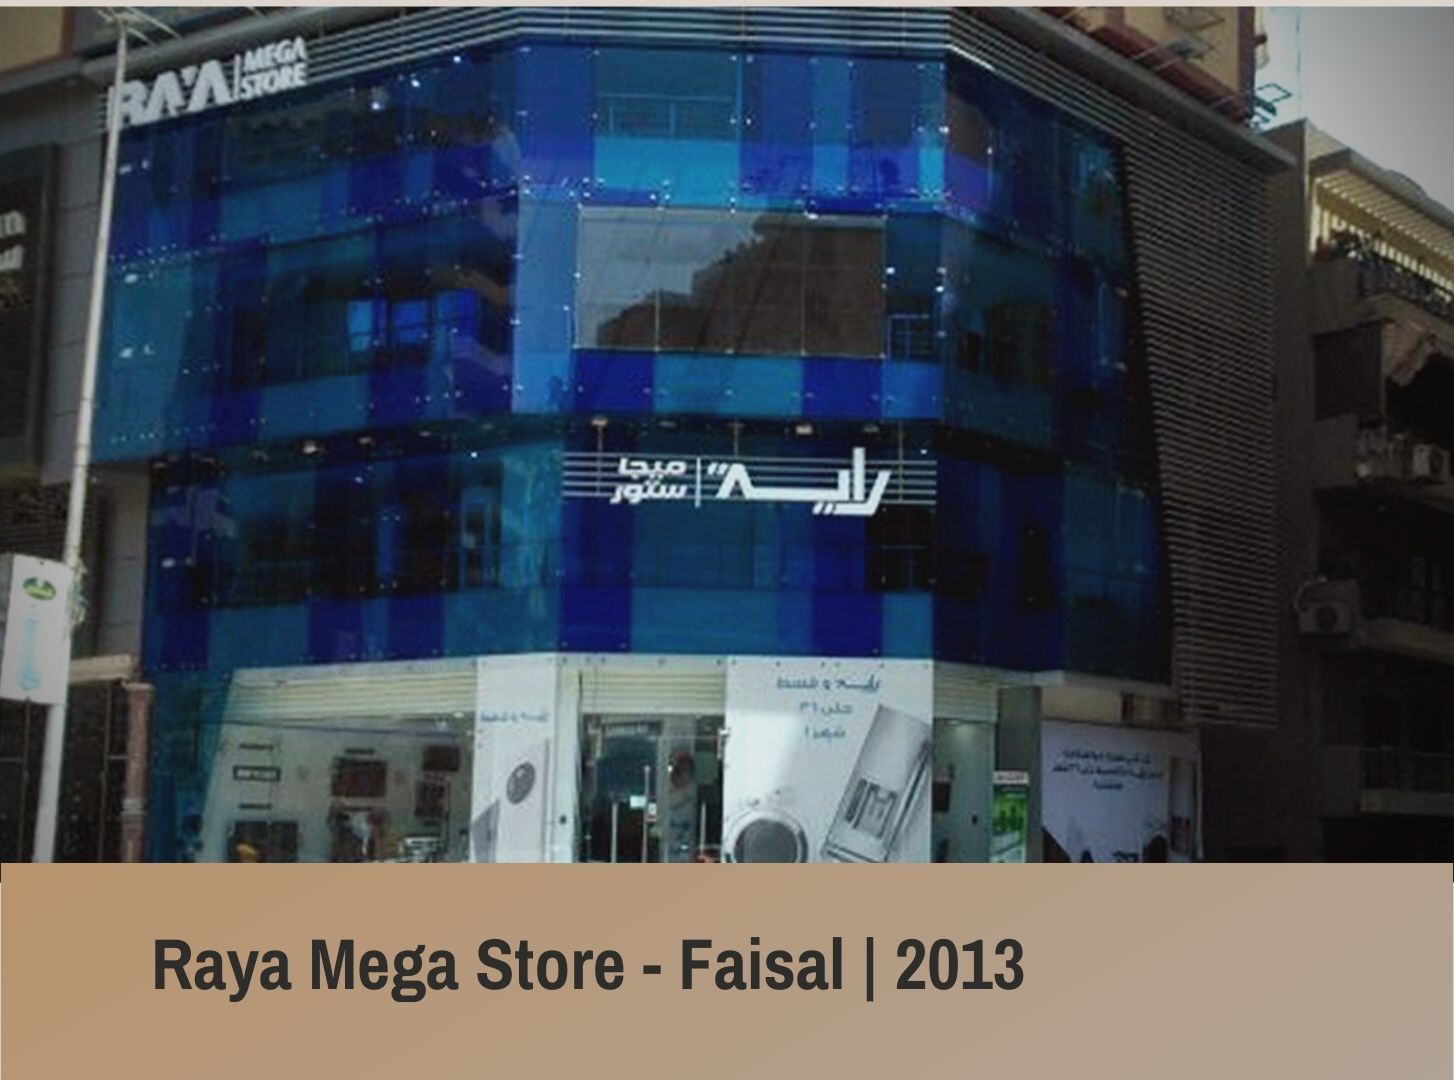 RAYA Mega Store - Faisal